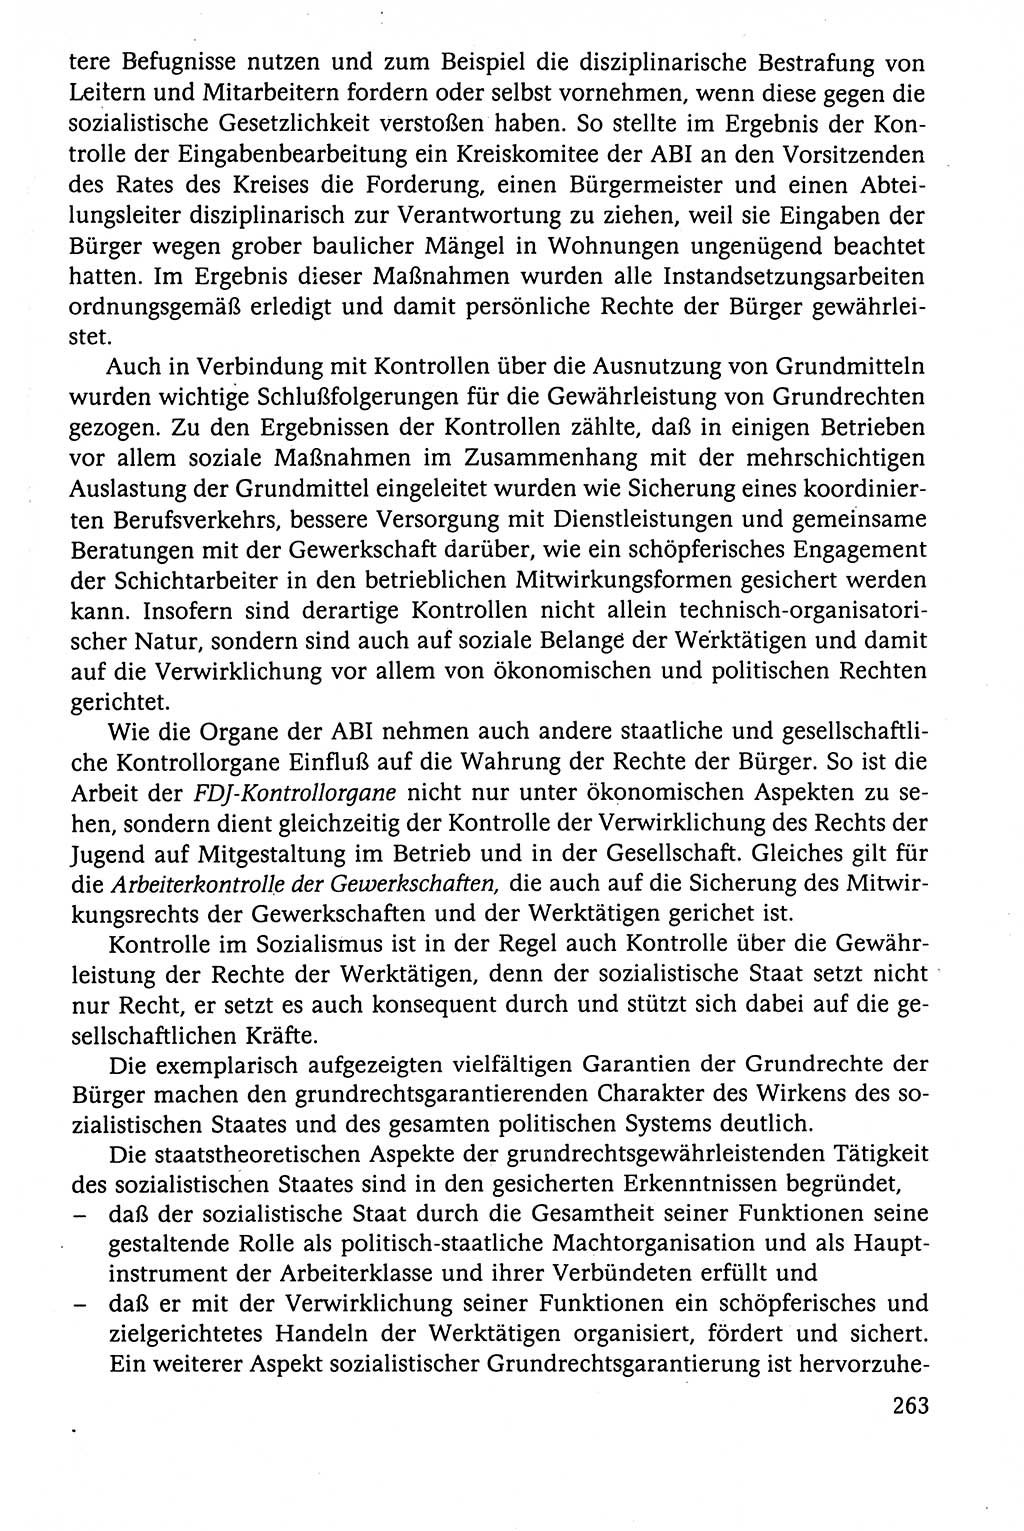 Der Staat im politischen System der DDR (Deutsche Demokratische Republik) 1986, Seite 263 (St. pol. Sys. DDR 1986, S. 263)